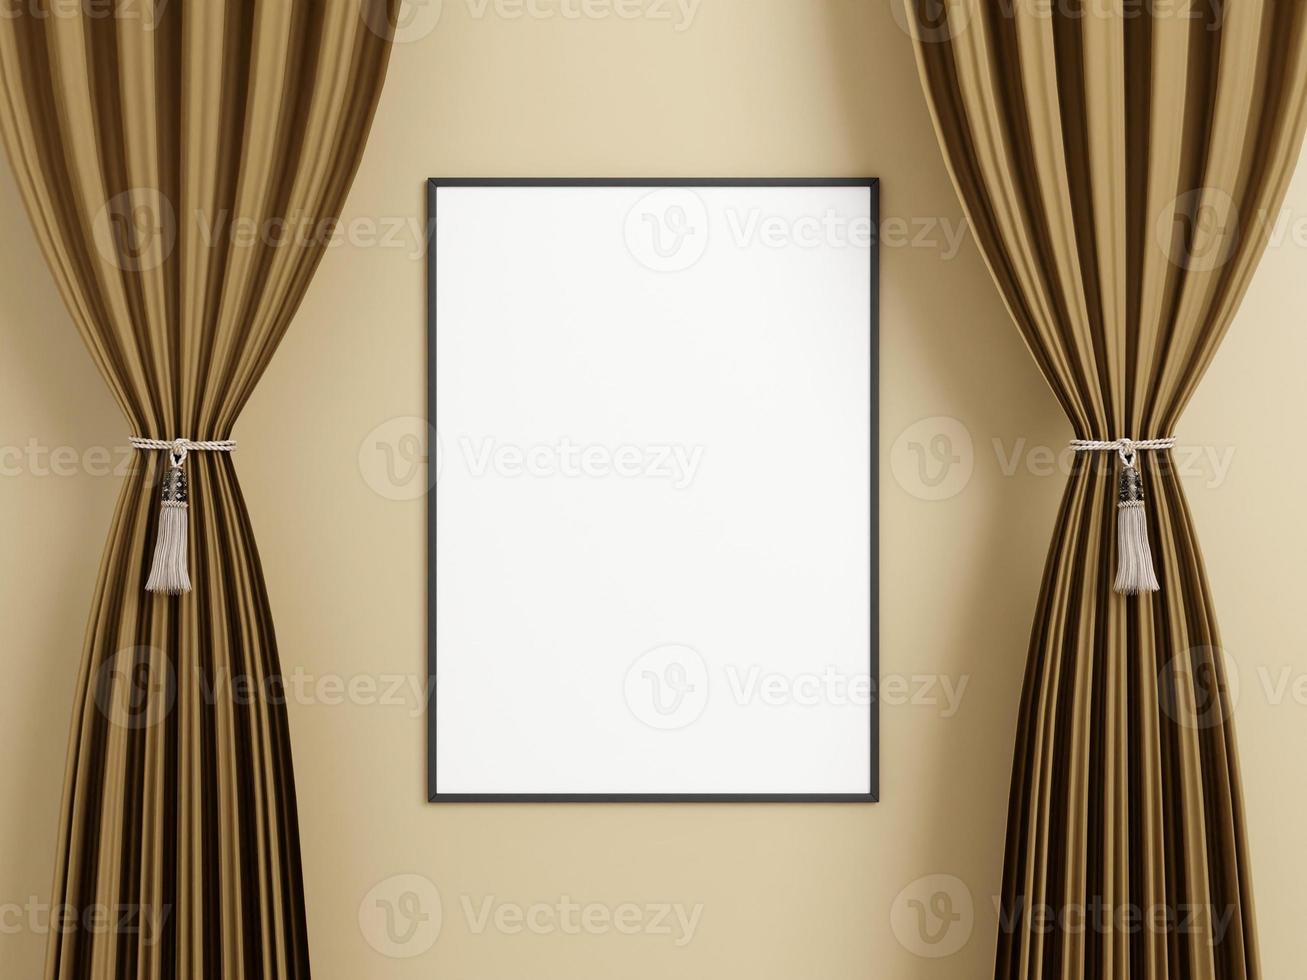 affiche noire verticale minimaliste ou maquette de cadre photo sur le mur entre le rideau.